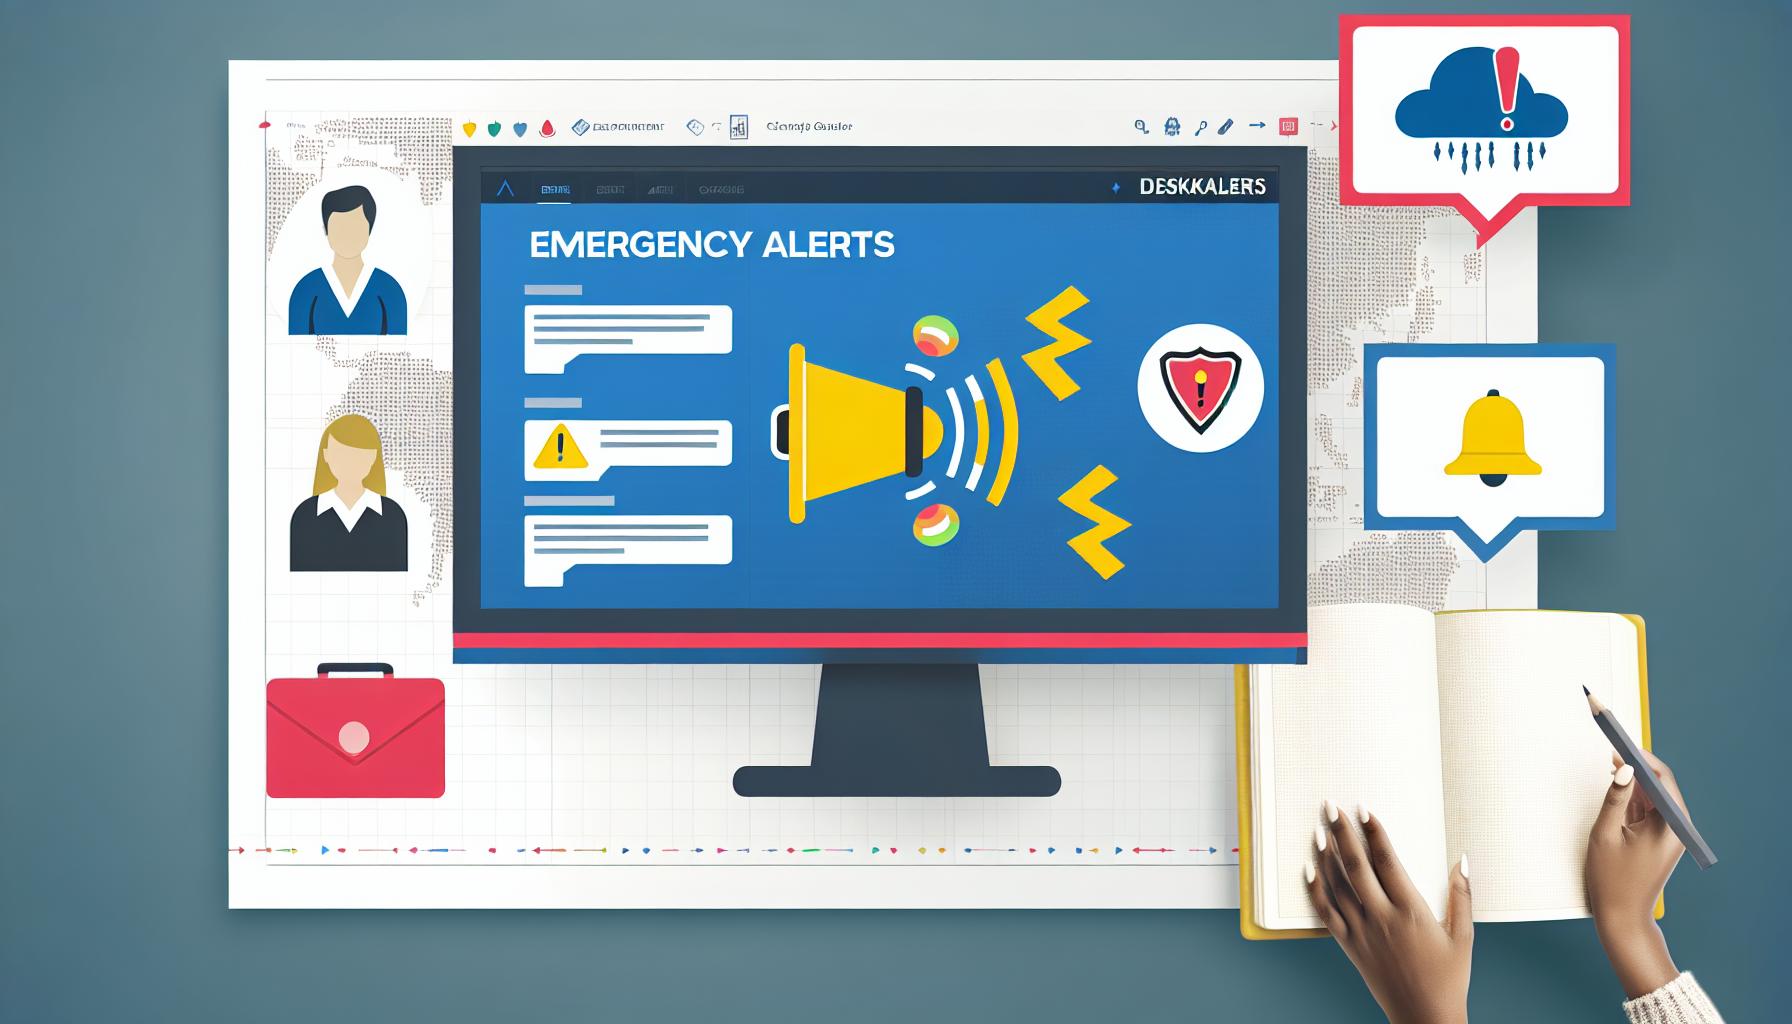 DeskAlerts use case guide leveraging emergency alerts for enhanced safety and communication